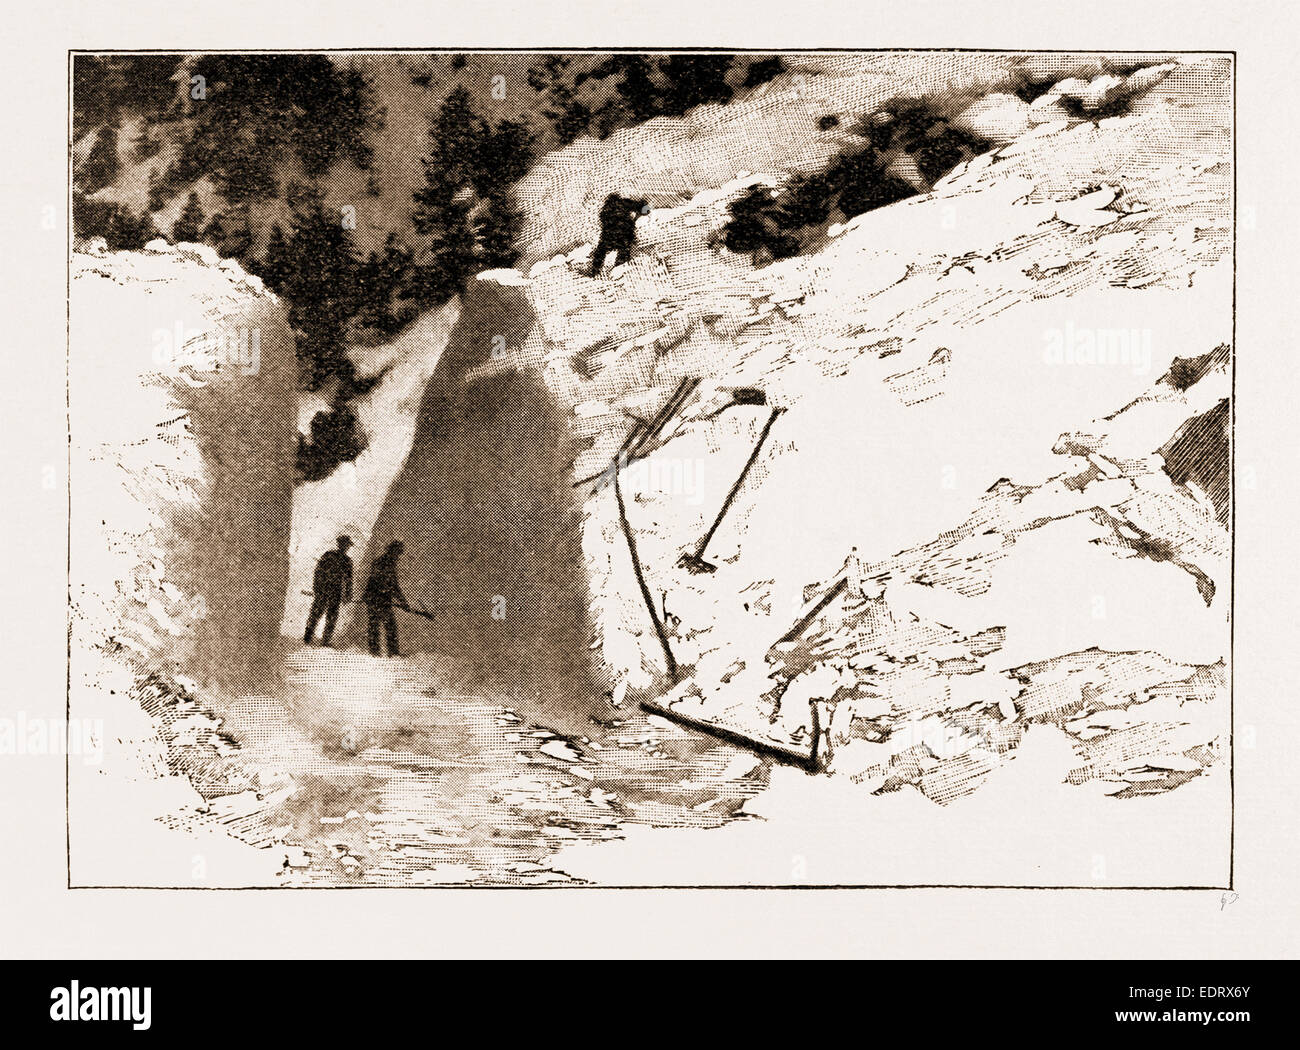 La valanga fatale vicino a Davos, 1897: IL POST strada tagliata attraverso la valanga IN ZUGE PASS Foto Stock